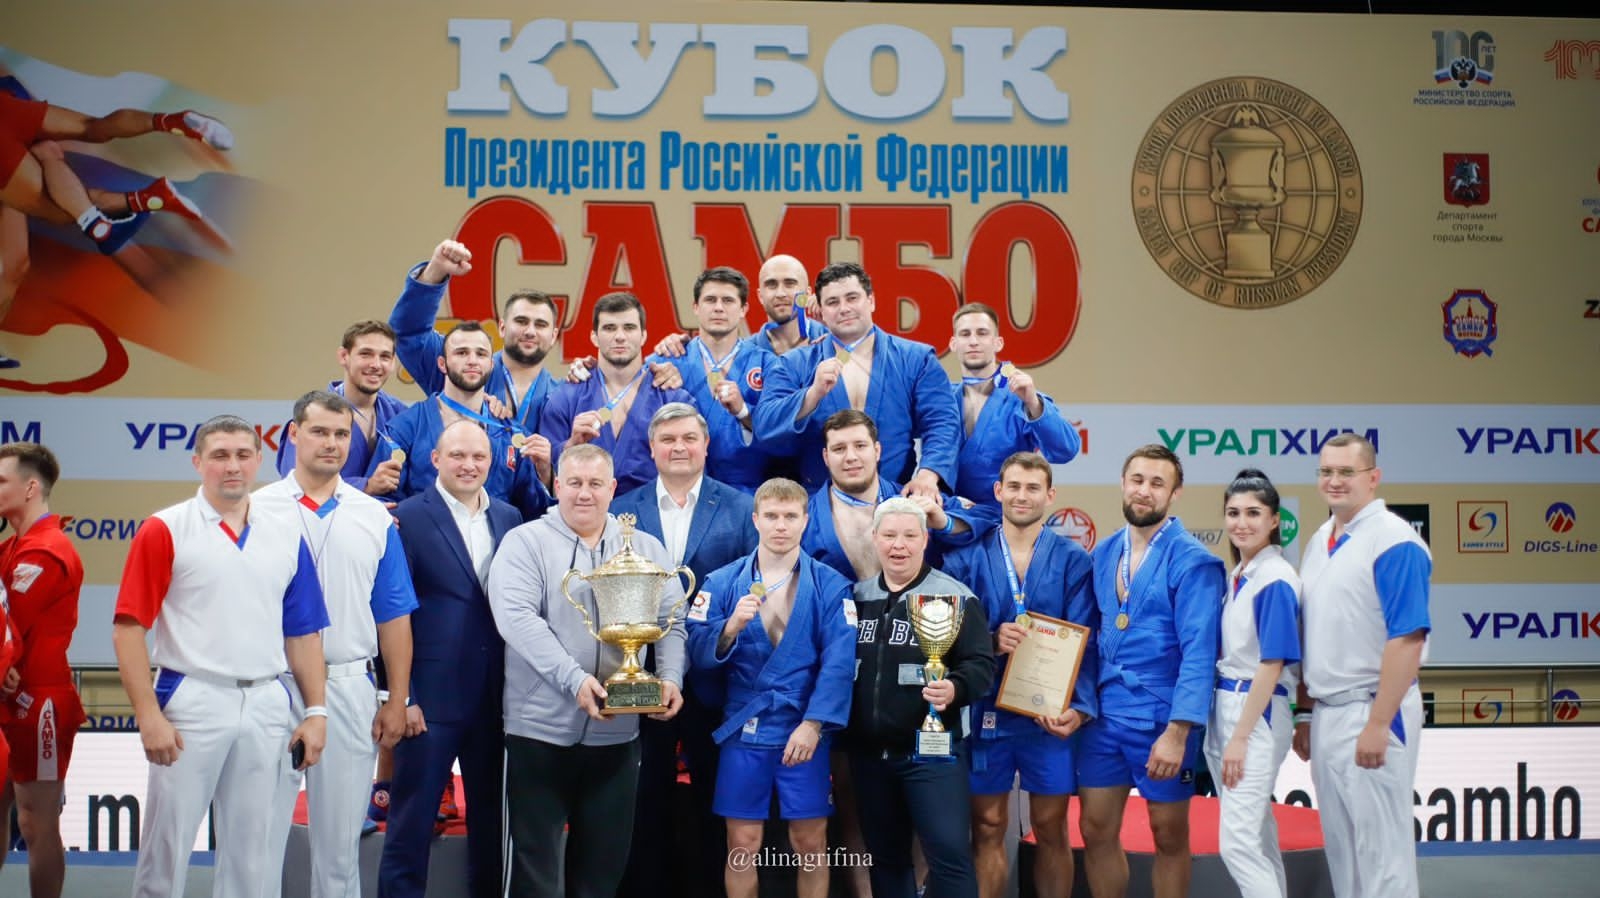 Первоуральский самбист выиграл 15-ый Кубок Президента в составе команды ФСИН